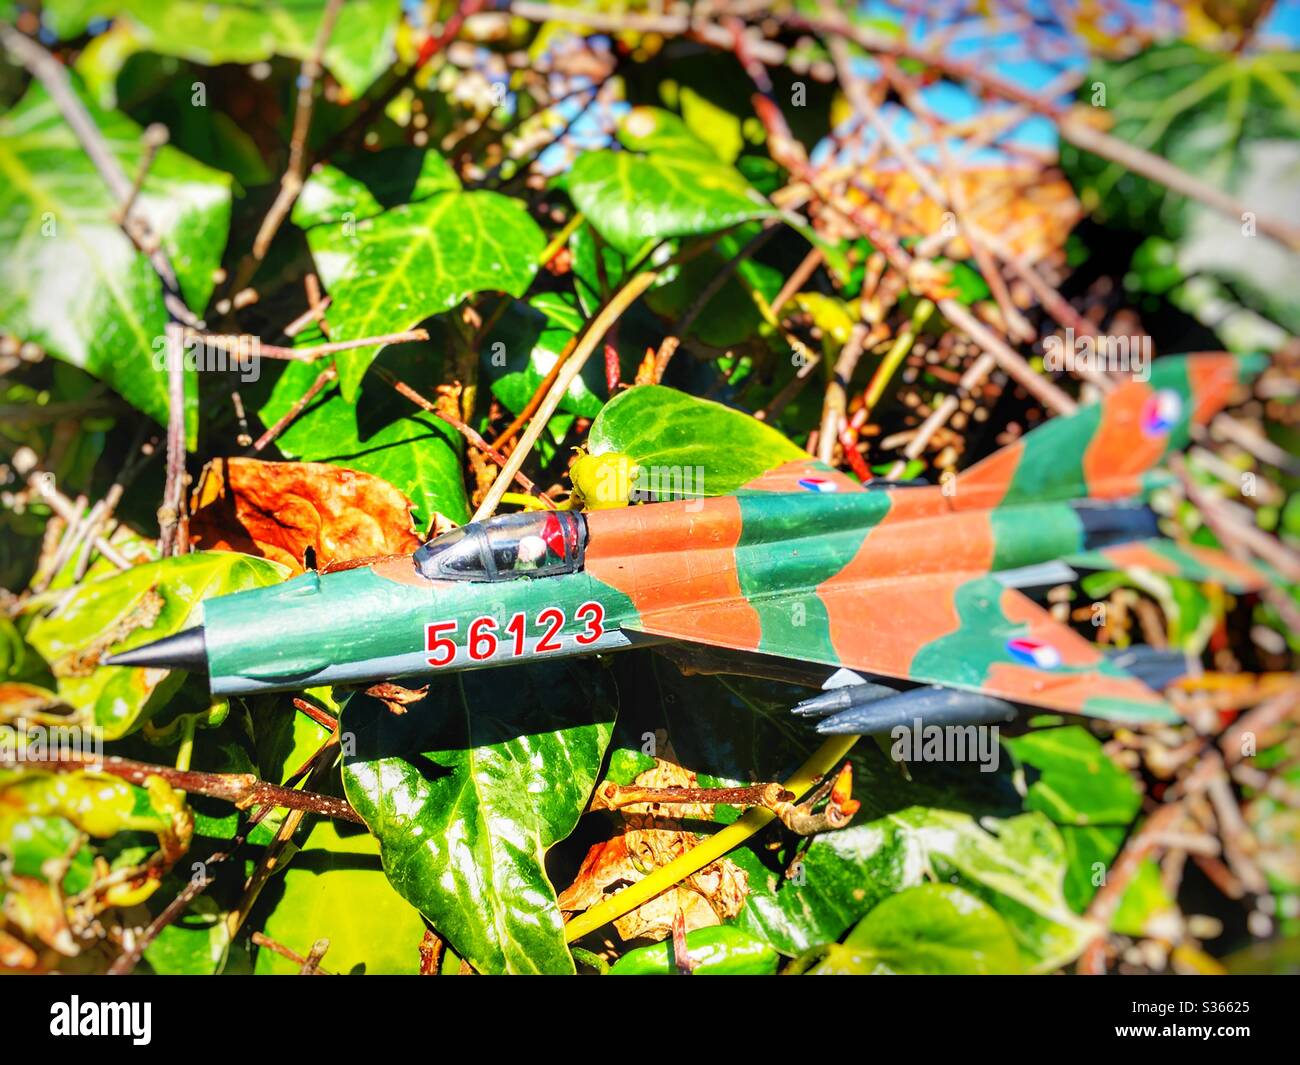 Modell Flugzeug in einer Hecke stecken Stockfoto